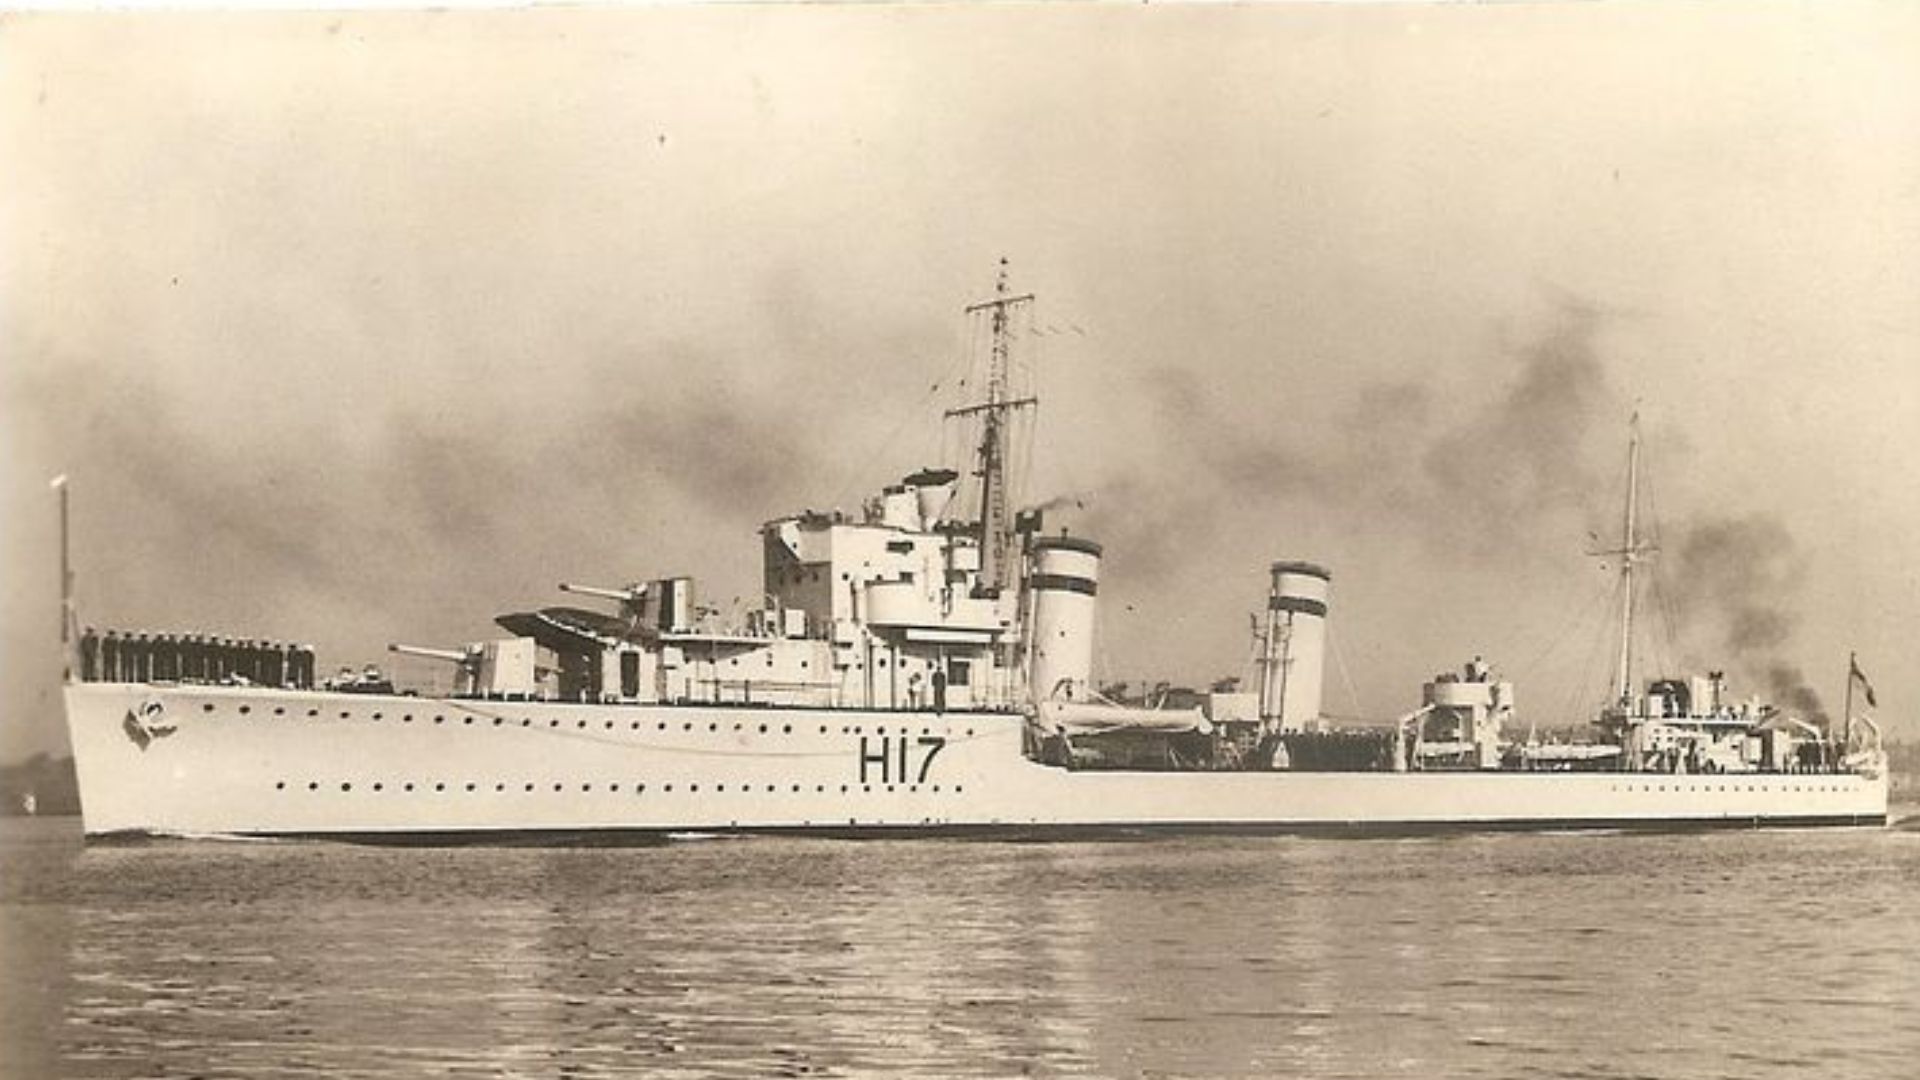 HMS Escapade (H17)